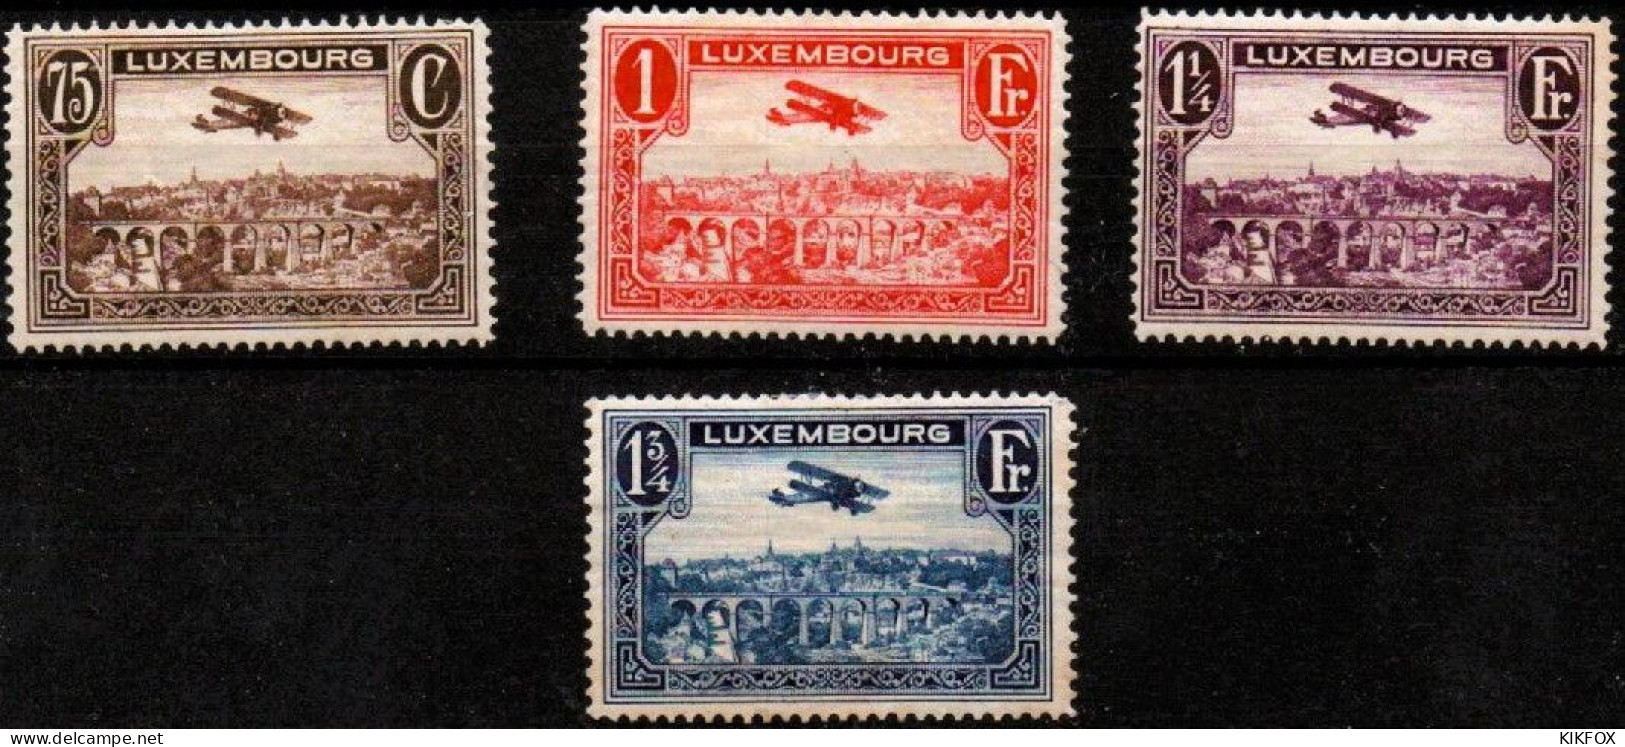 LUXEMBOURG, LUXEMBURG 1931 Mi 234 - 237 , PA 1 - 4  Flugpost , BREGUET-DOPPELDECKER, UNGEBRAUCHT, CHARNIERES * - Nuevos